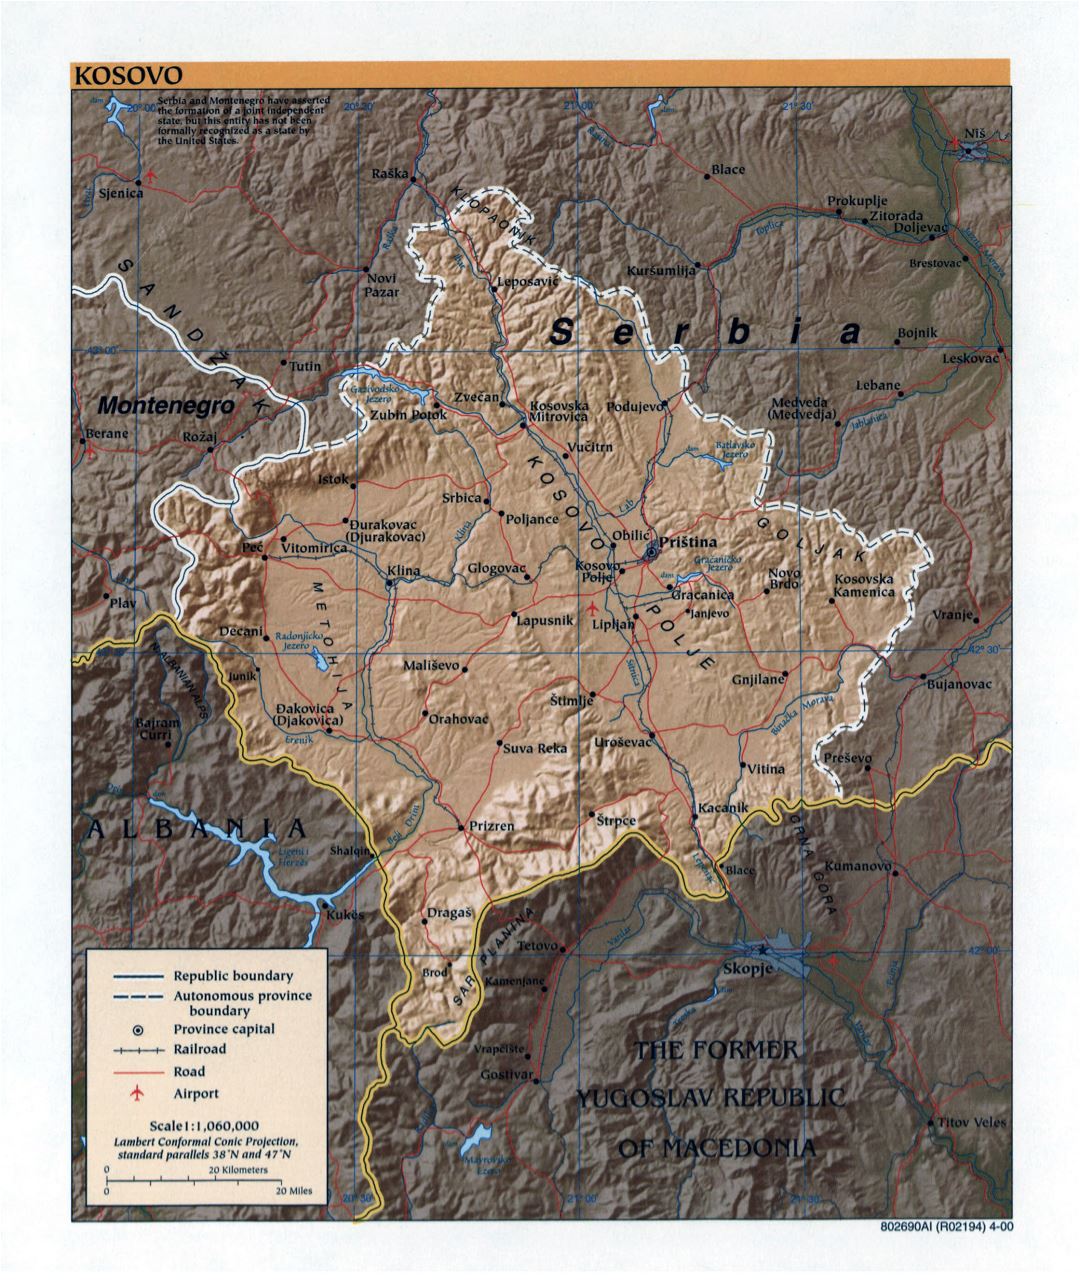 Grande detallada mapa política de Kosovo con alivio, carreteras, ferrocarriles, aeropuertos y las principales ciudades - 2000